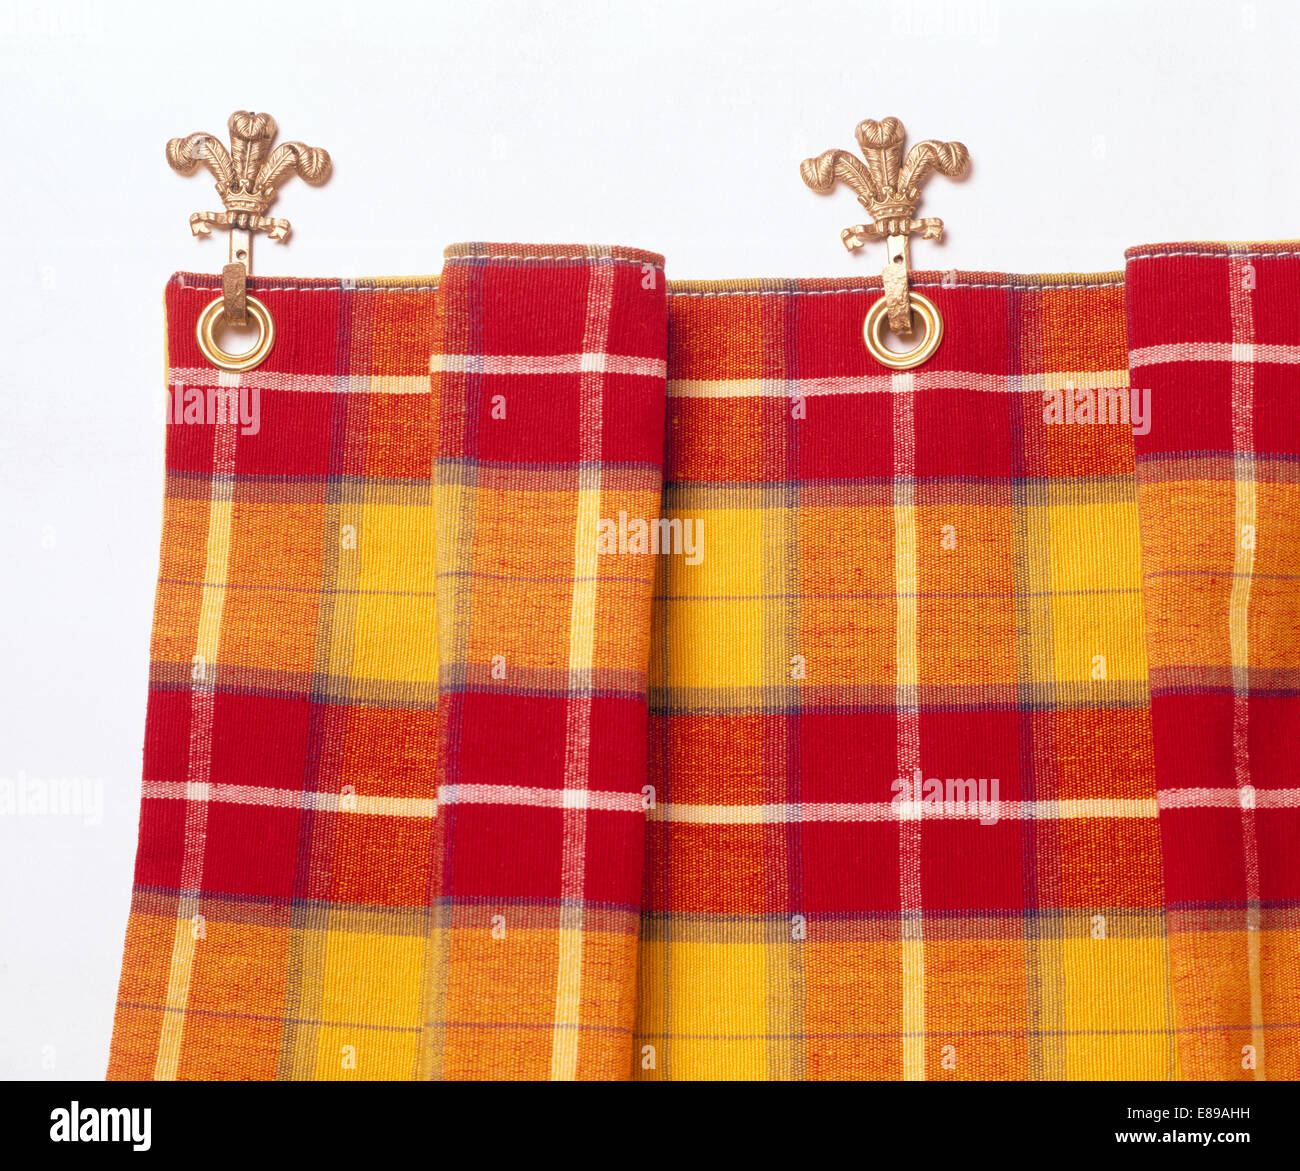 Rot + gelb karierten Vorhang auf Fleur de Lis Haken in Nahaufnahme  Stockfotografie - Alamy